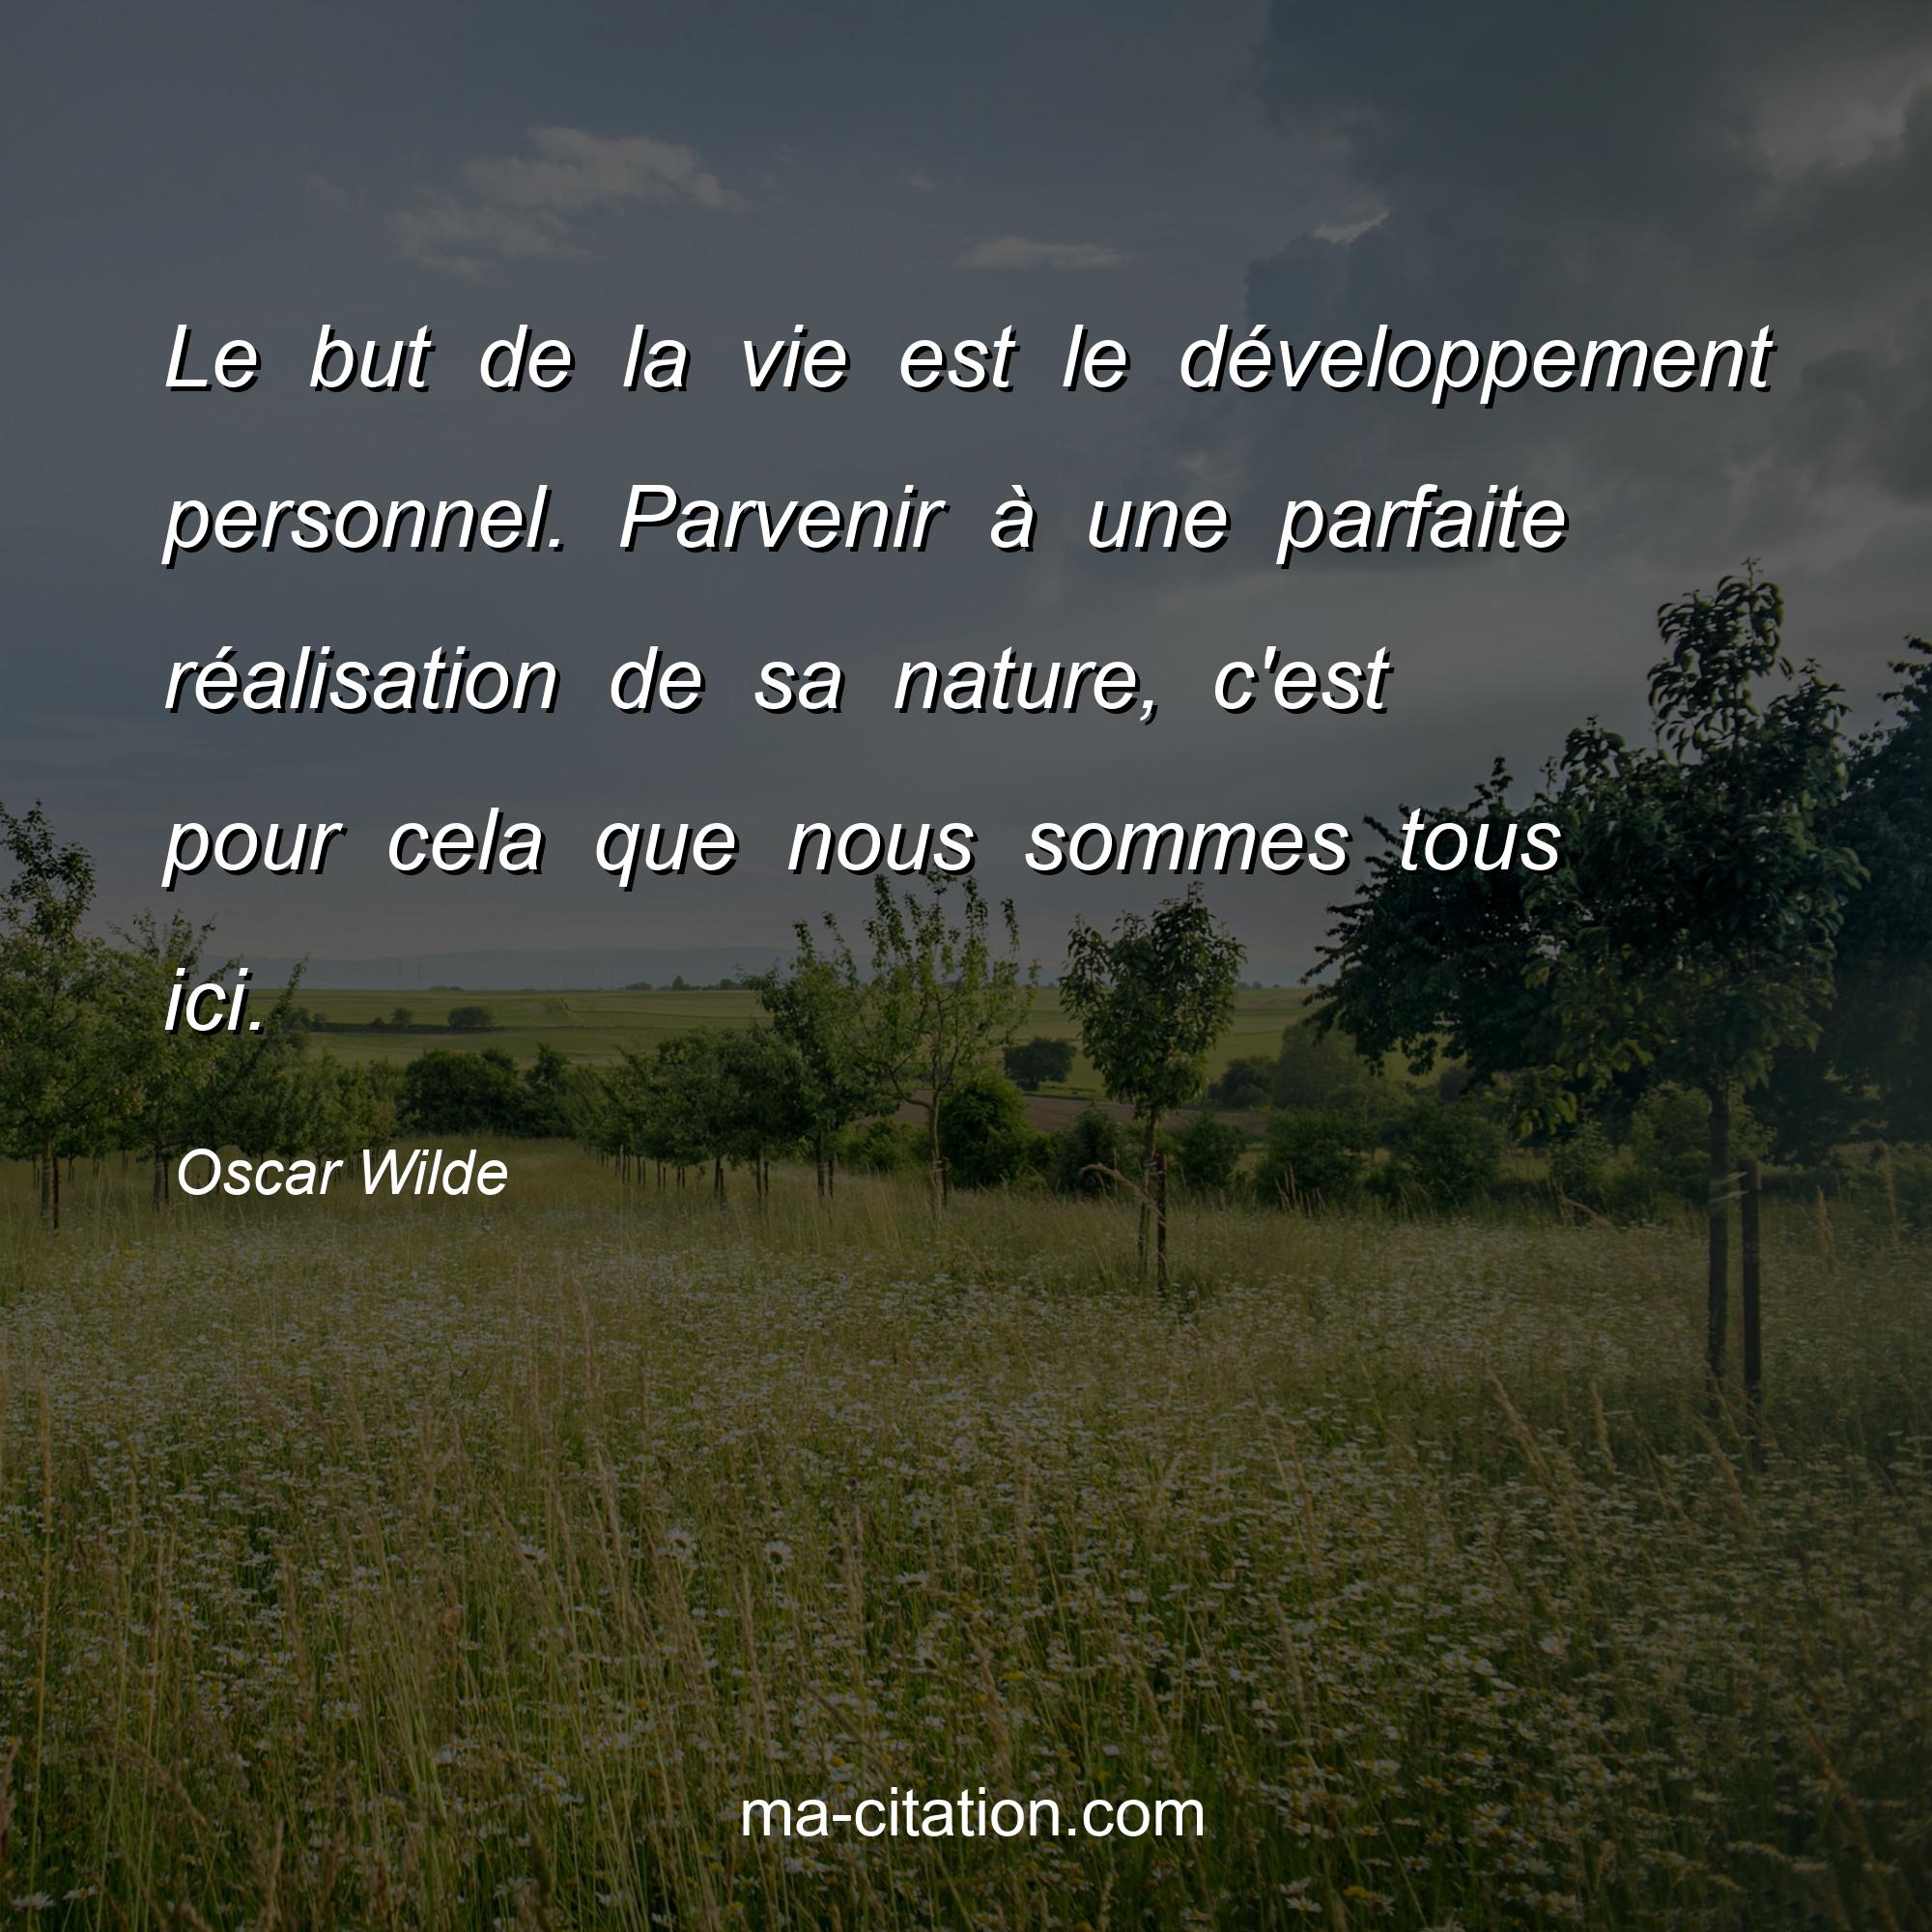 Oscar Wilde : Le but de la vie est le développement personnel. Parvenir à une parfaite réalisation de sa nature, c'est pour cela que nous sommes tous ici.